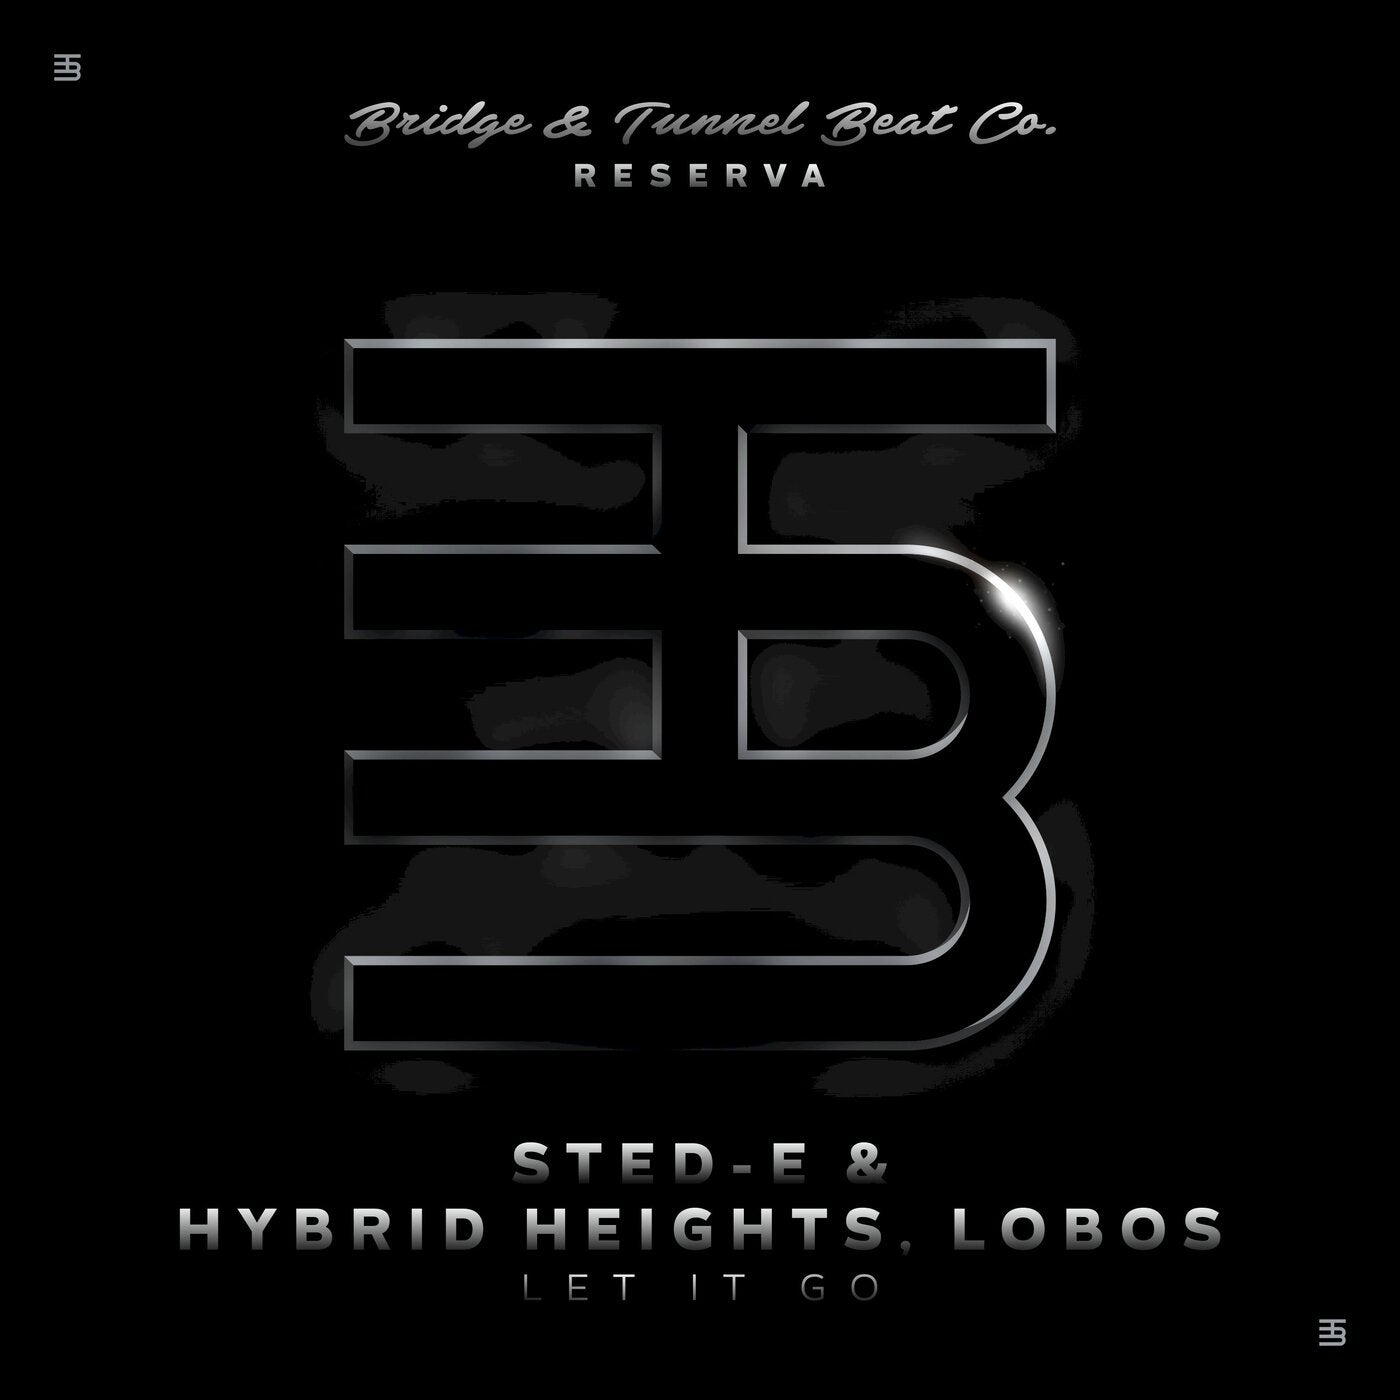 Sted E & Hybrid Heights, Lobos - Let It Go [BTBC0043]